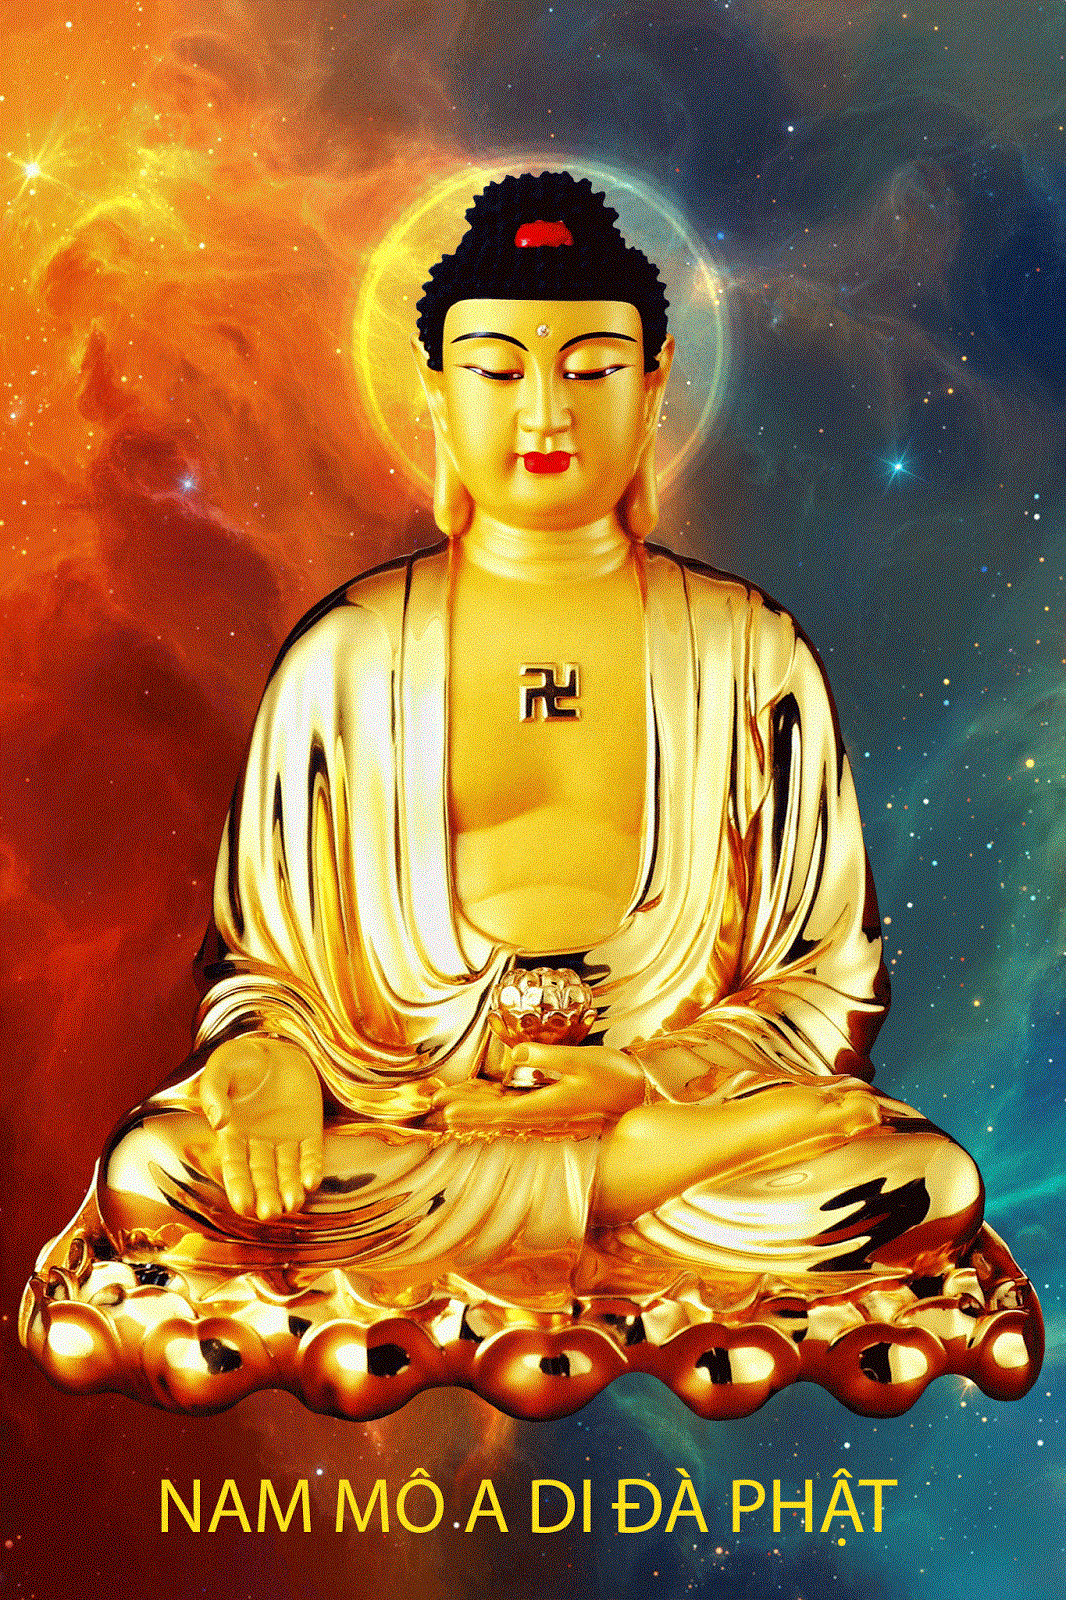 Đưa mắt đến những hình ảnh Phật A Di Đà 3D, bạn sẽ thấy rõ được vẻ đẹp thiên nhiên và sự linh thiêng của niềm tin tuyệt vời trong tín ngưỡng Phật giáo. Điều này sẽ mang đến động lực và niềm cảm hứng cho cuộc sống của bạn.